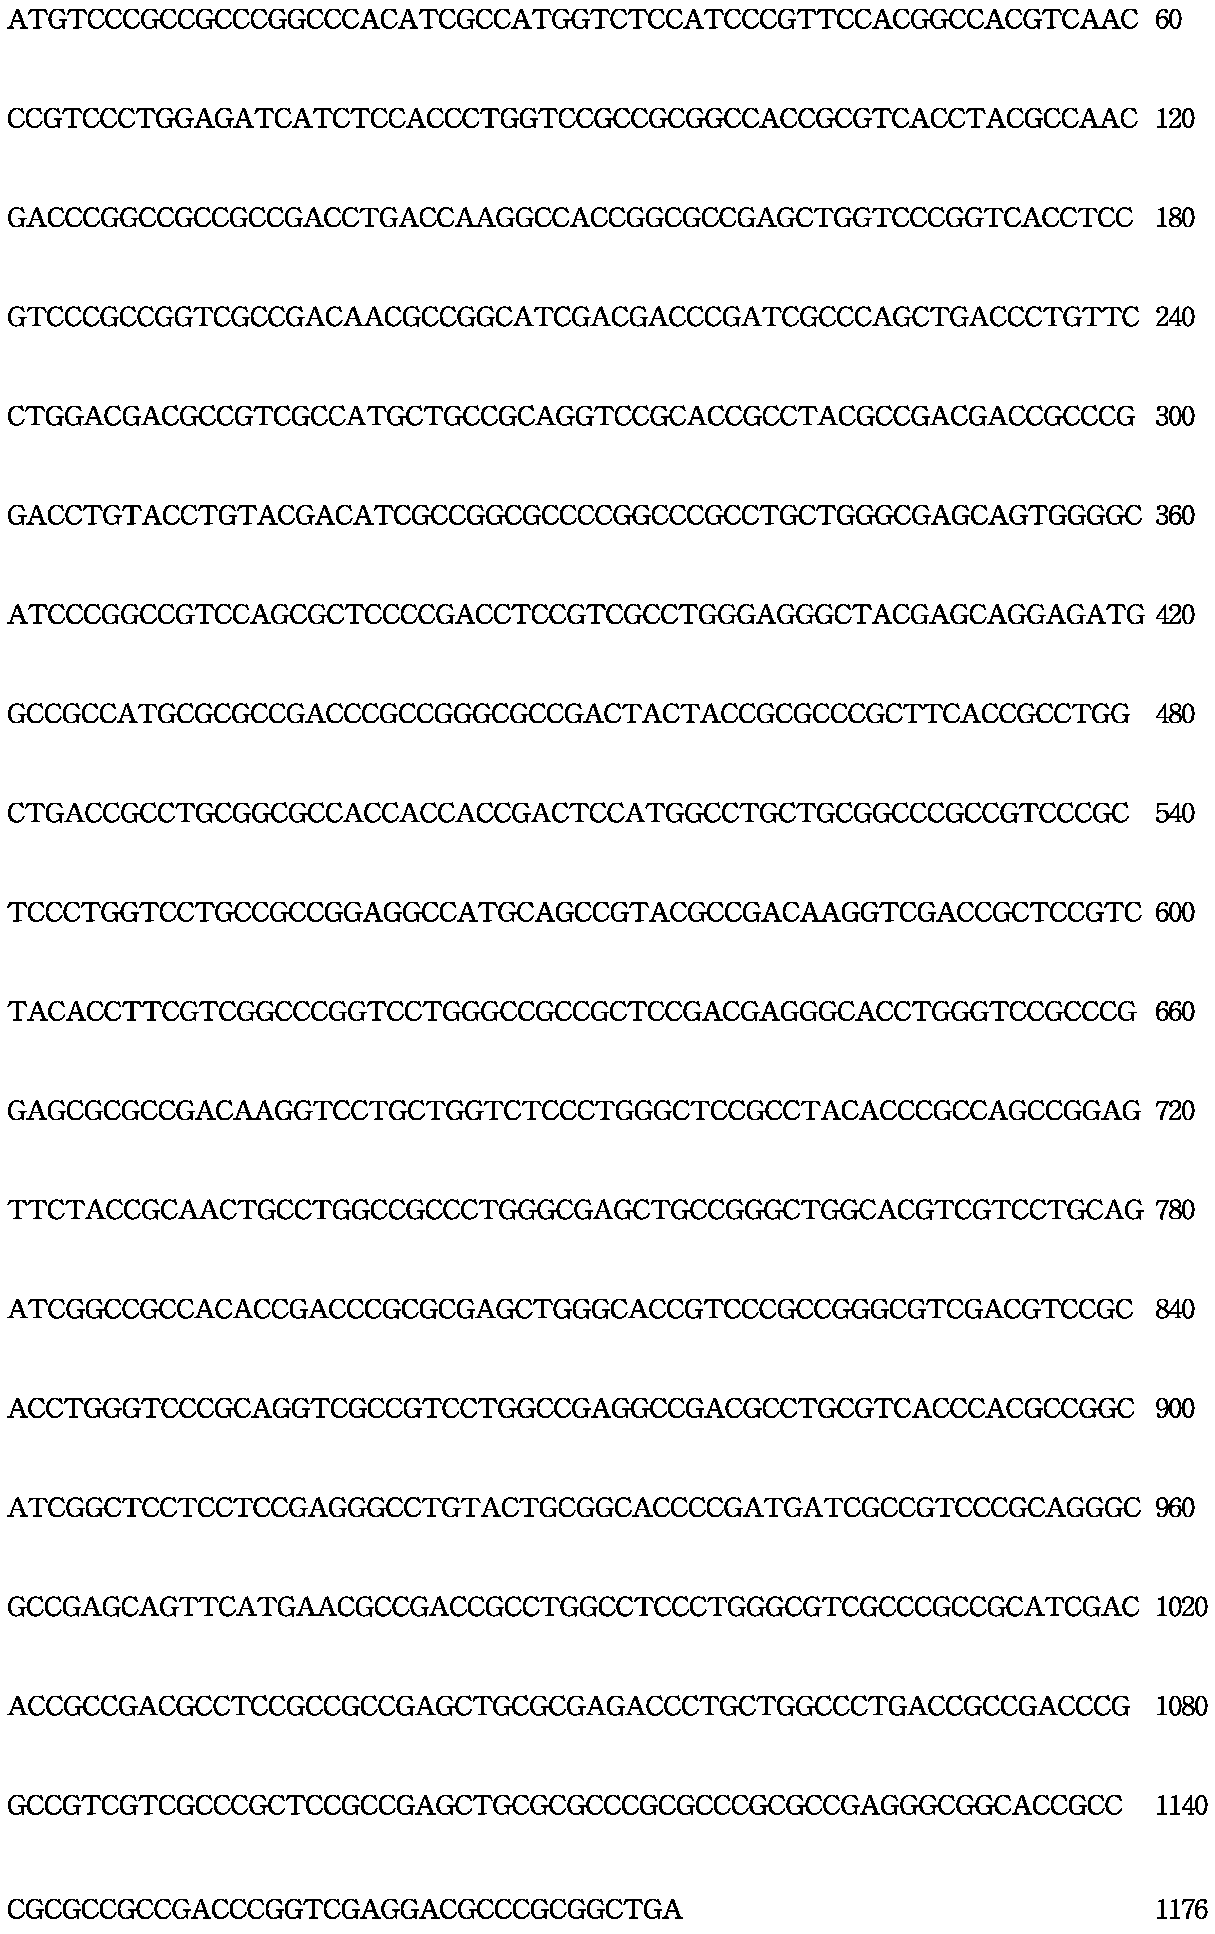 MrSPGT 암화화 유전자의 염기서열